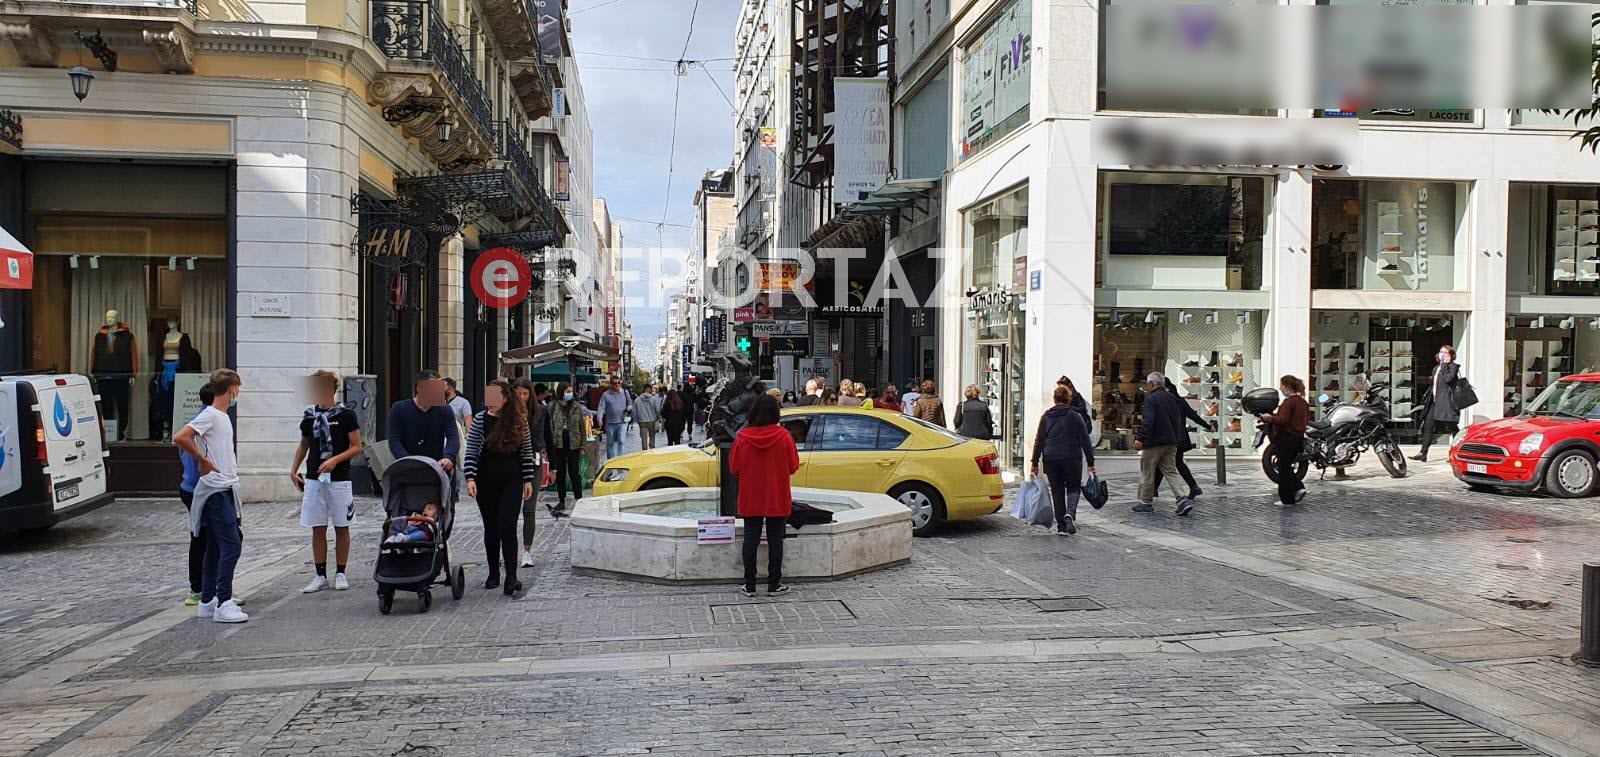 Κορωνοϊός: Ρεκόρ με 19.828 κρούσματα στην Αττική και 5.459 στη Θεσσαλονίκη - Ποιες περιοχές είναι στο "κόκκινο"